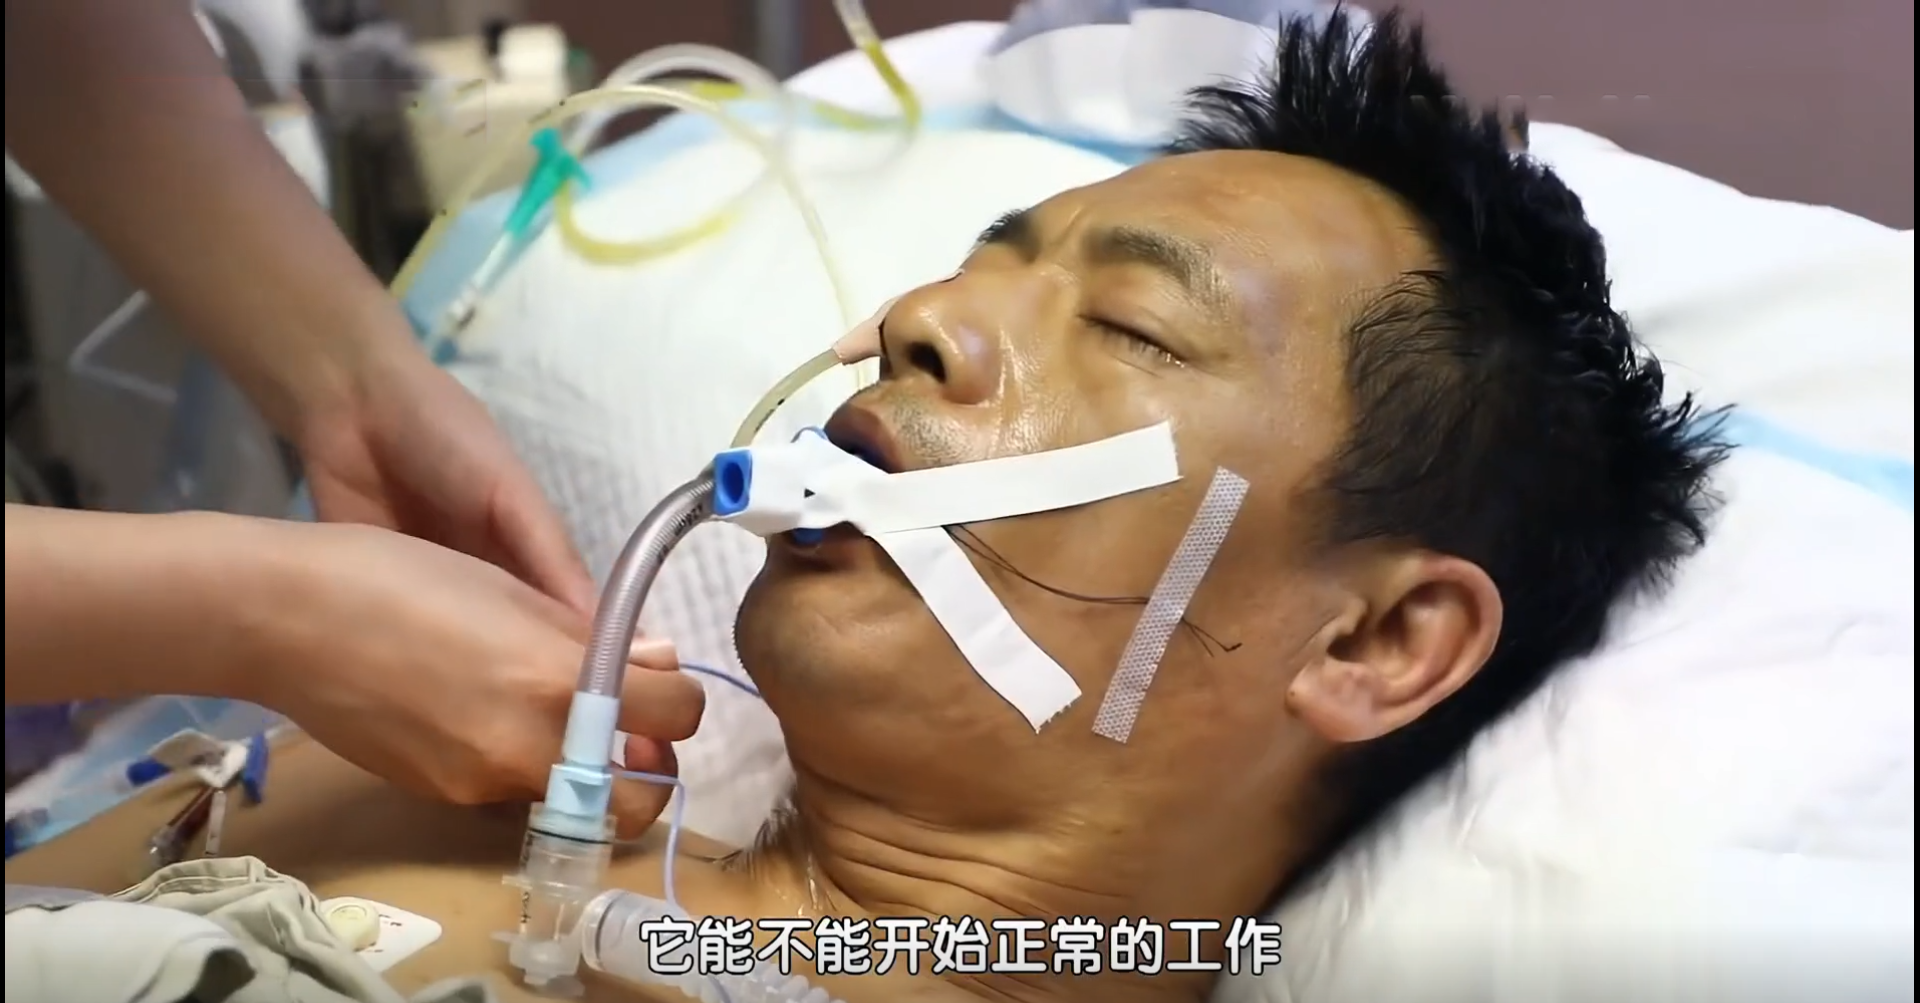 2018年，内蒙古一父亲身患绝症生命垂危，独生子力排众议割肝救父